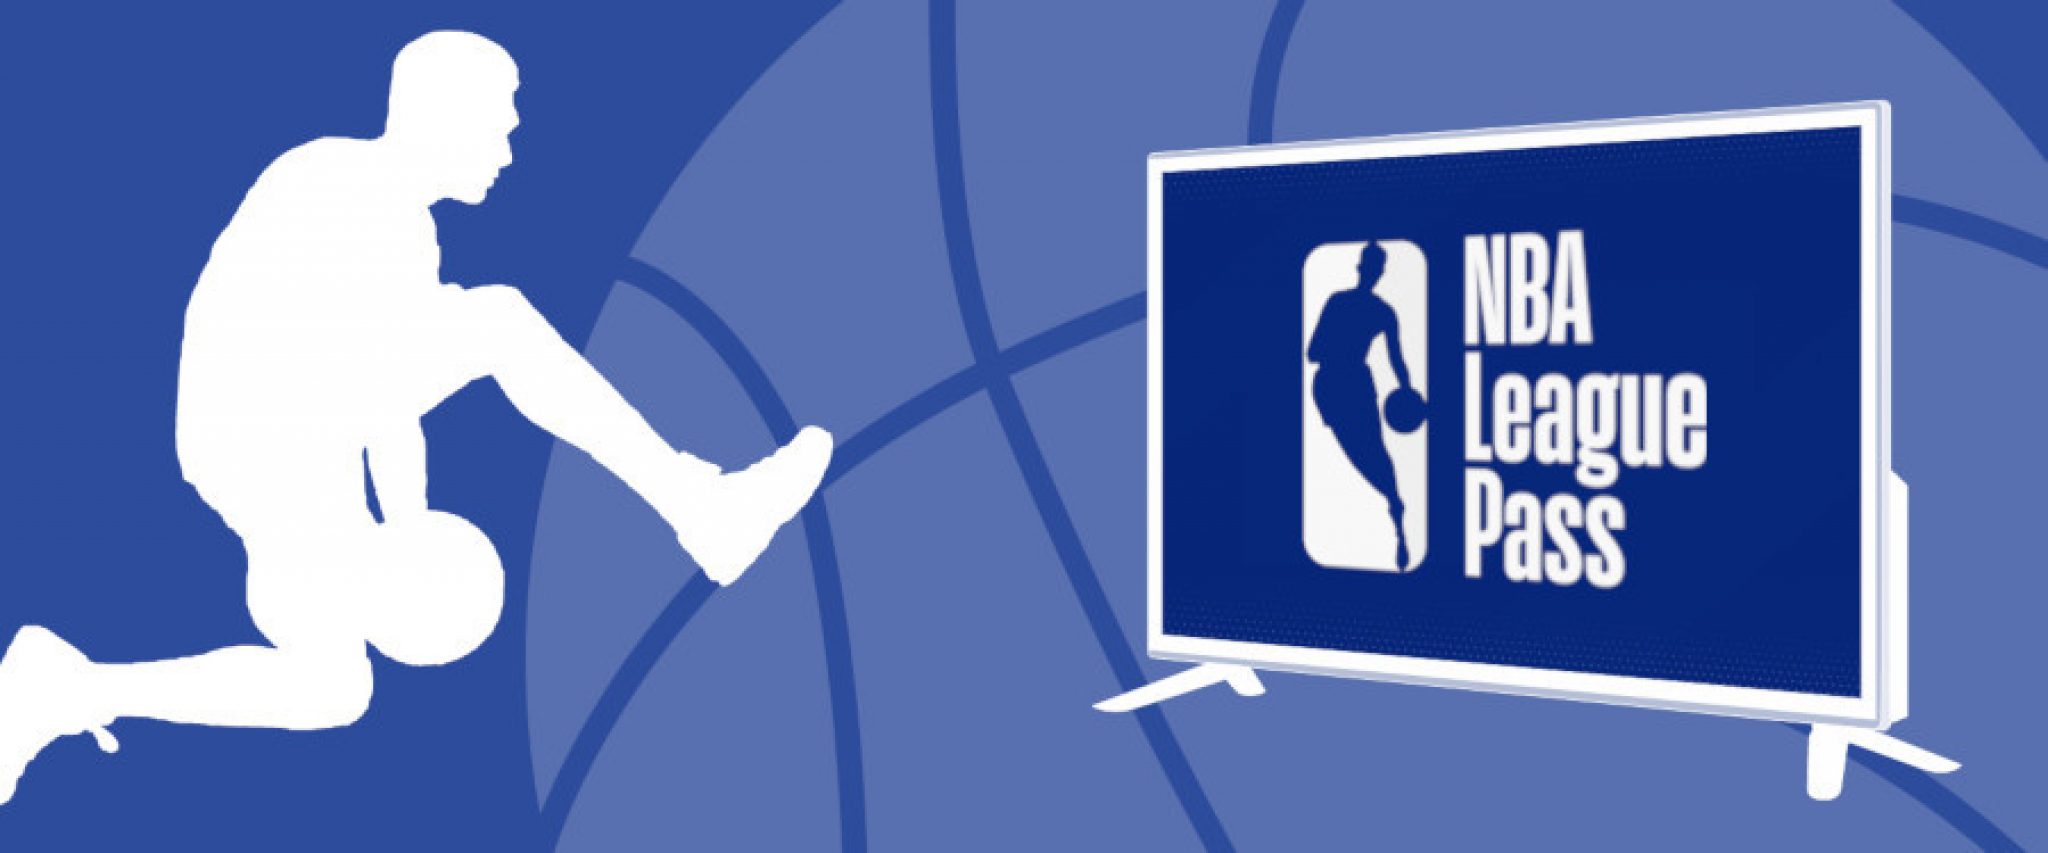 Guide pour acheter un abonnement NBA League Pass moins cher